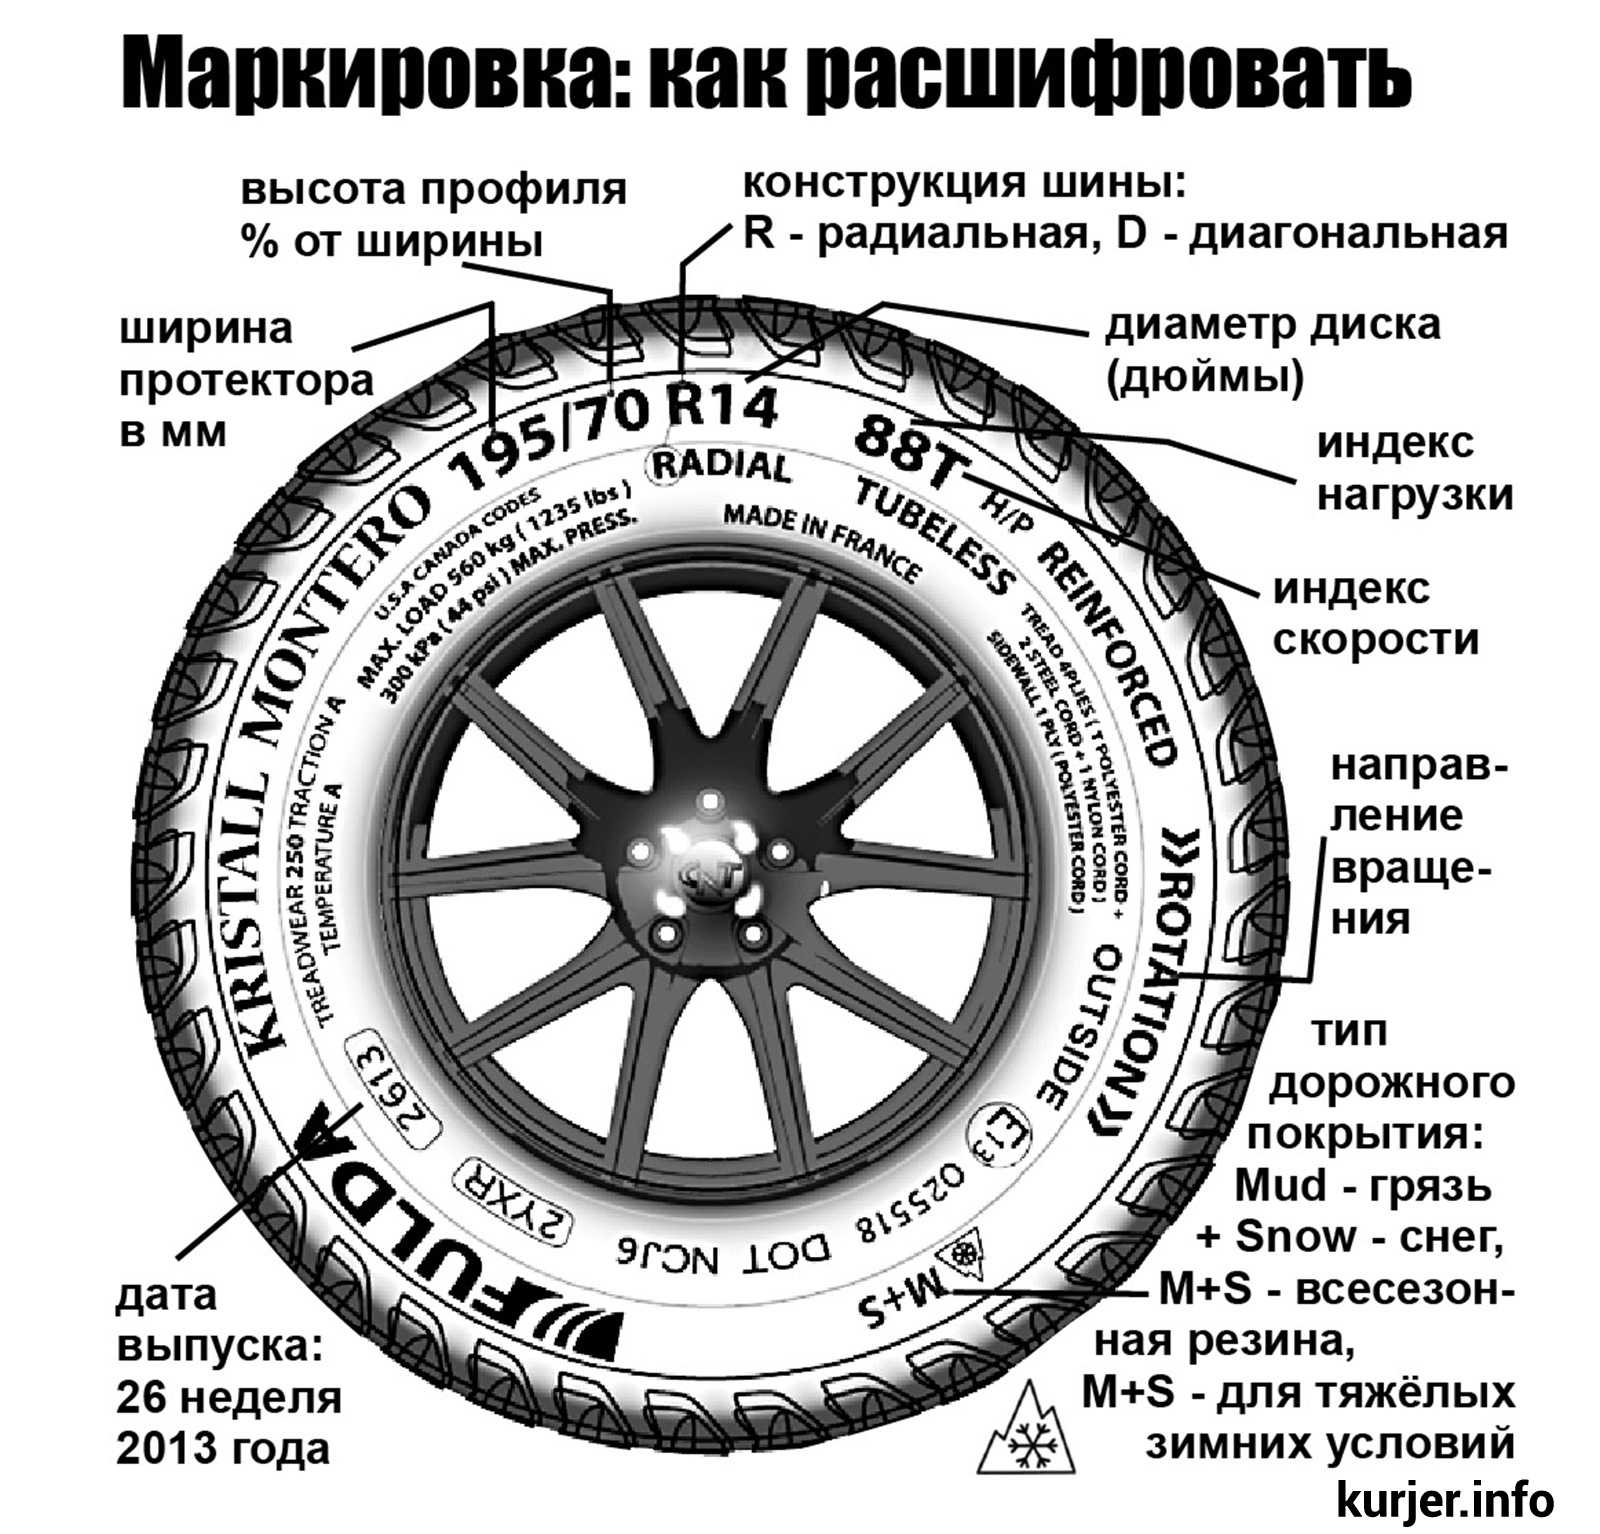 Как определить направленные шины или нет